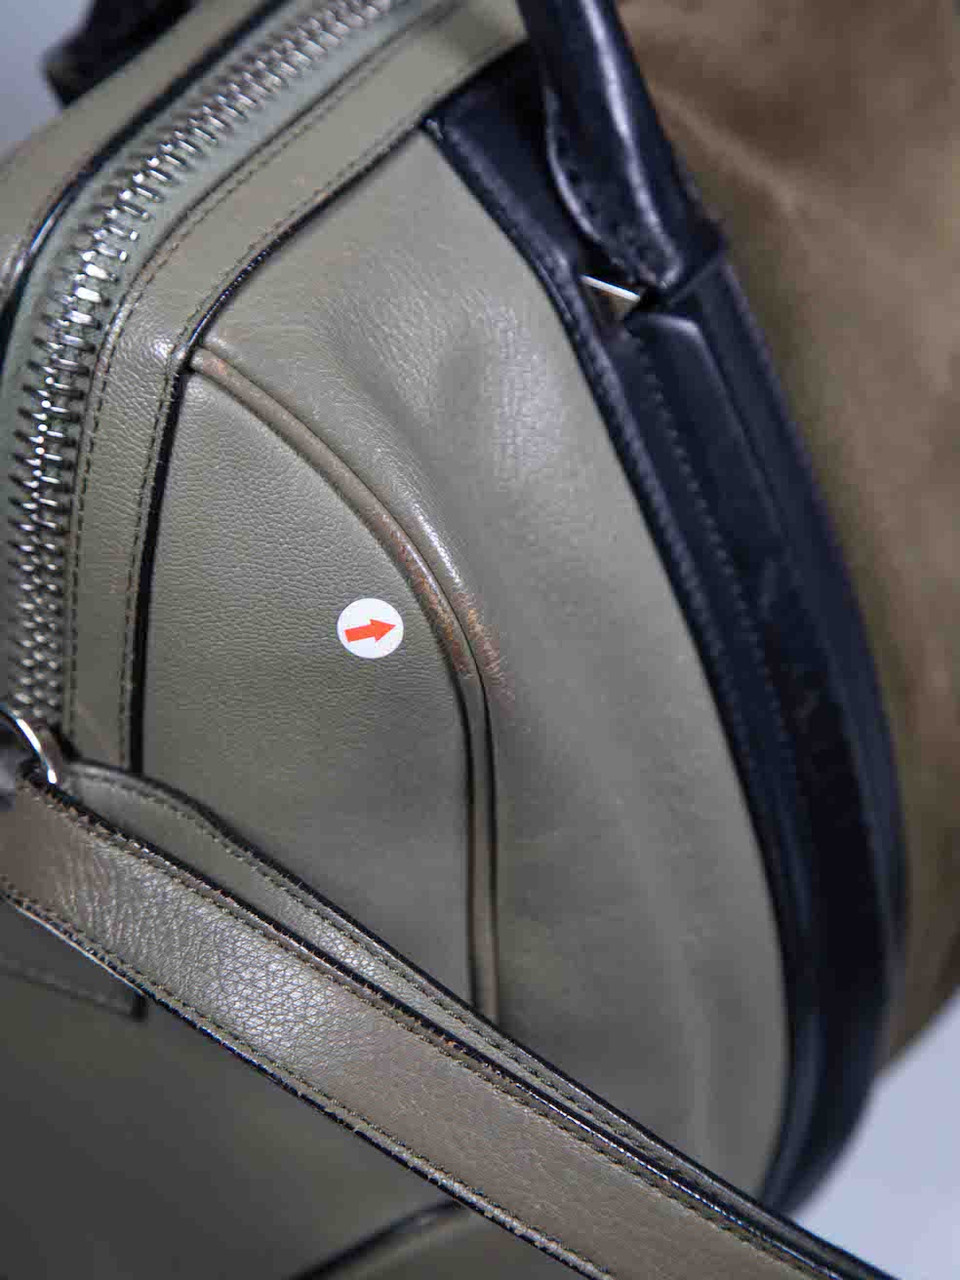 Givenchy Khaki Leather Medium Lucrezia Shoulder Bag